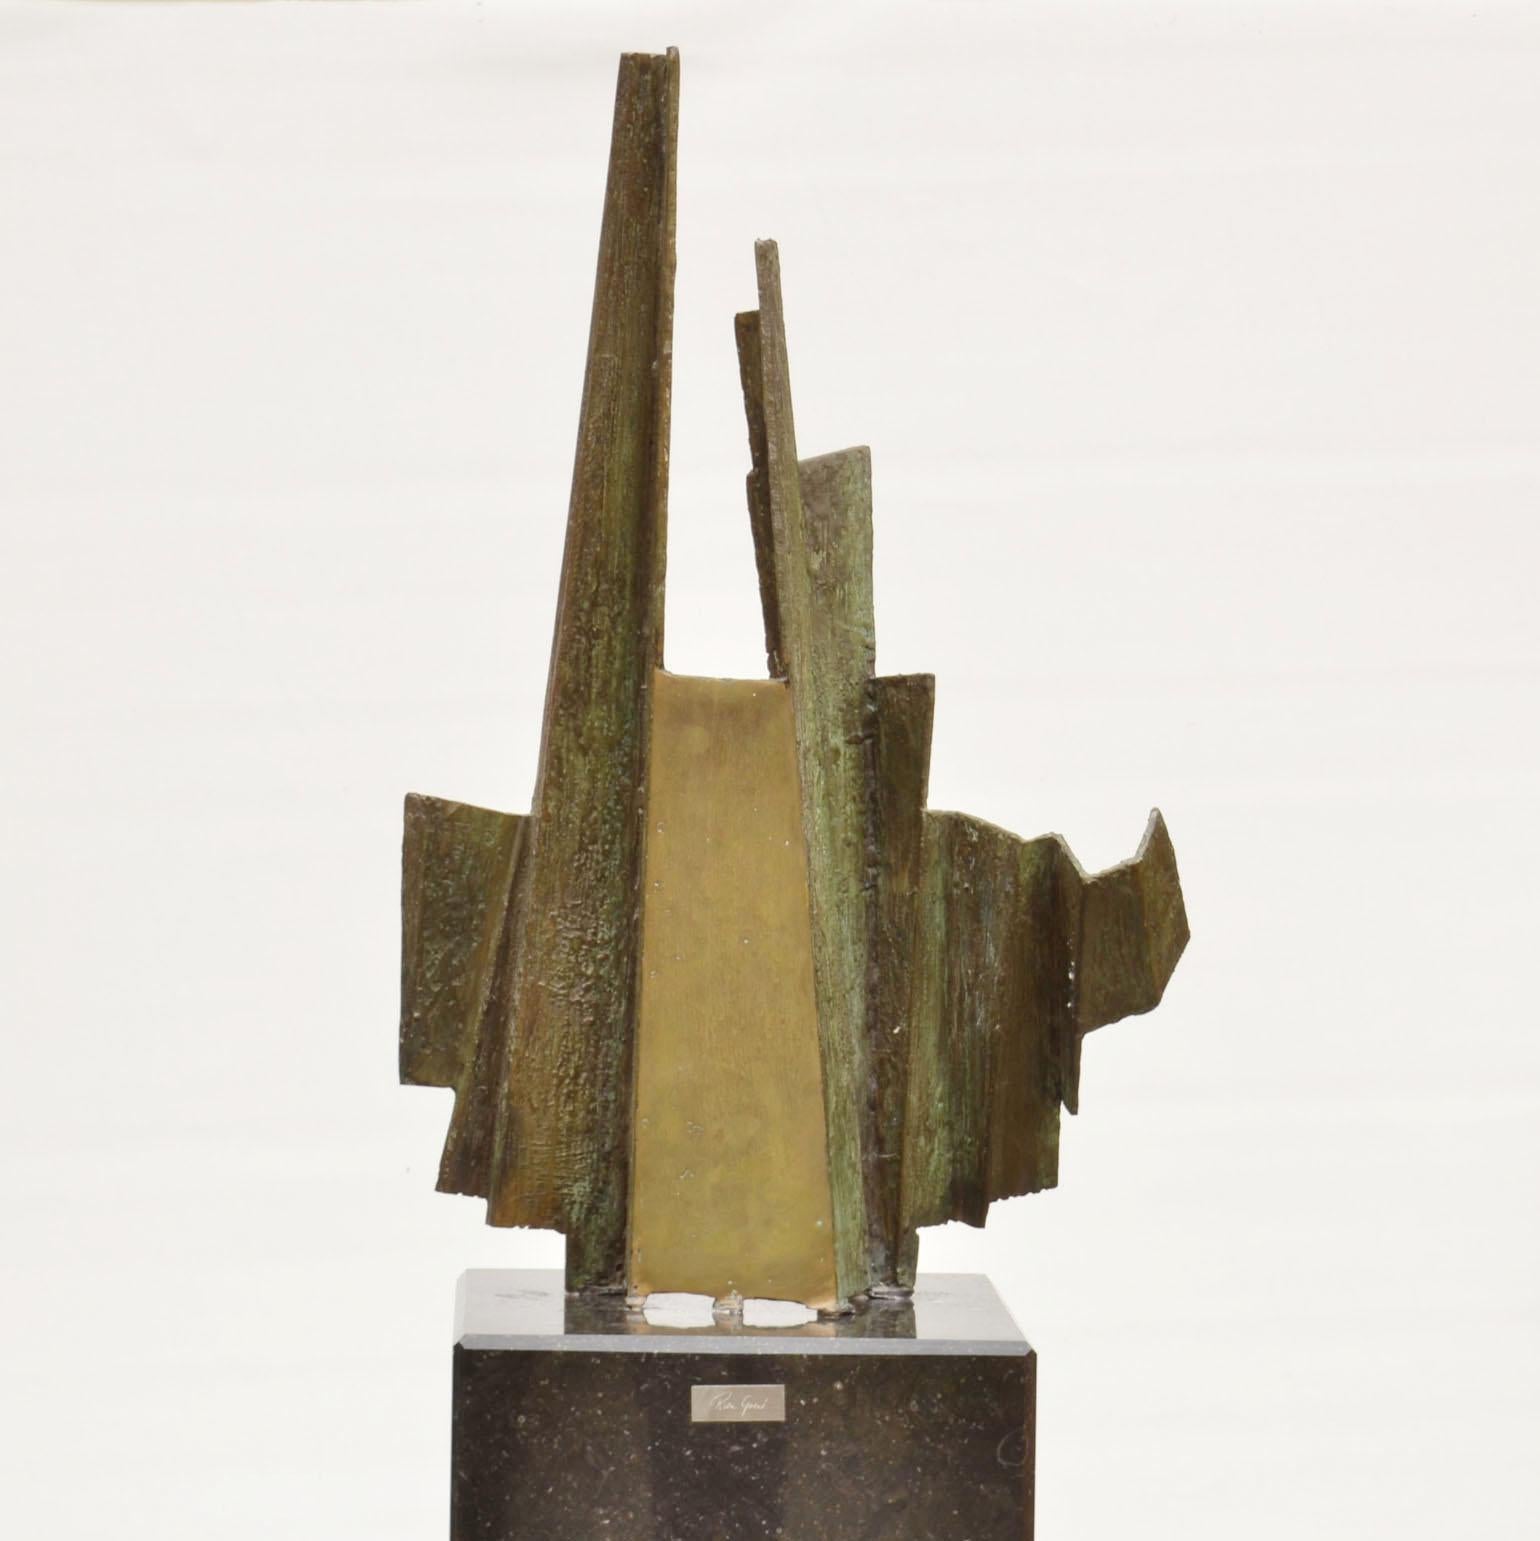 Une des deux sculptures abstraites brutalistes de l'artiste néerlandais Rien Goené (1929-2013) circa 1980, signée. La sculpture asymétrique en bronze en forme de concertina est colorée d'une patine vert clair. Lorsque les zones sont frottées, elles